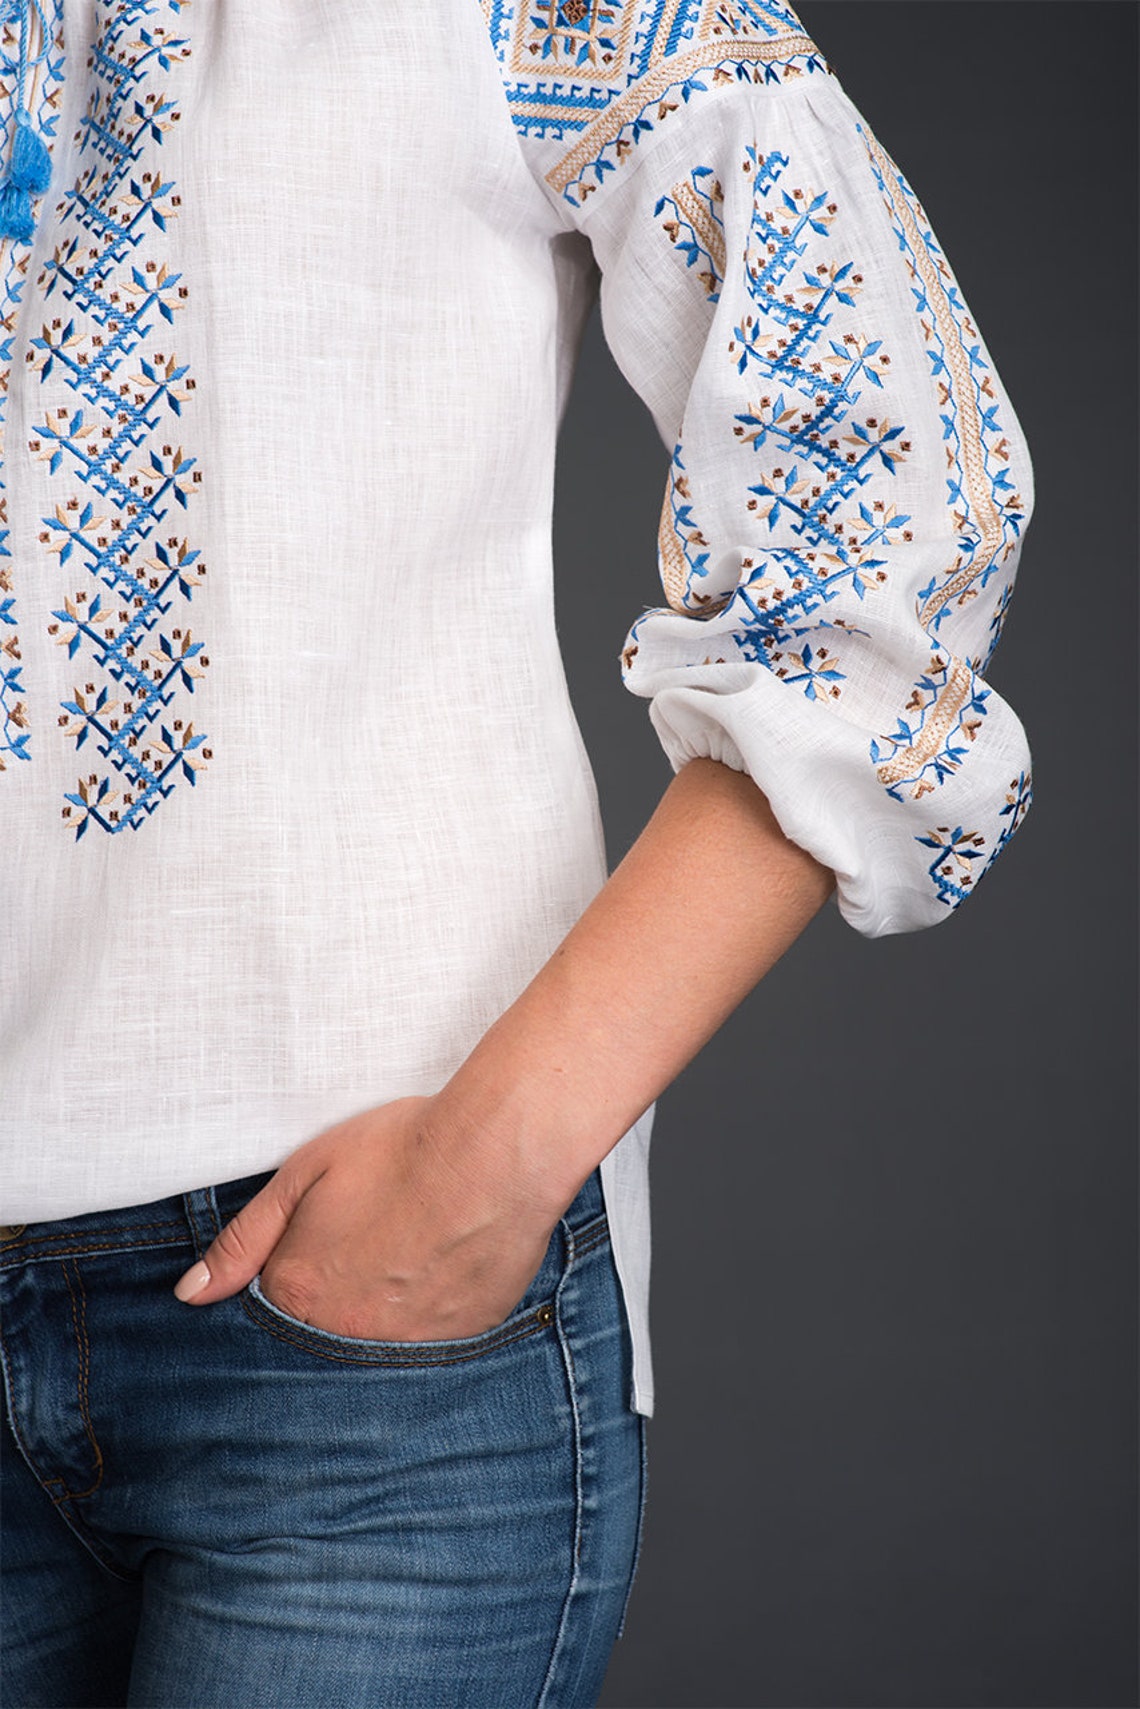 Embroidered White Linen Blouse Ethnic Ukrainian Clothing Boho | Etsy